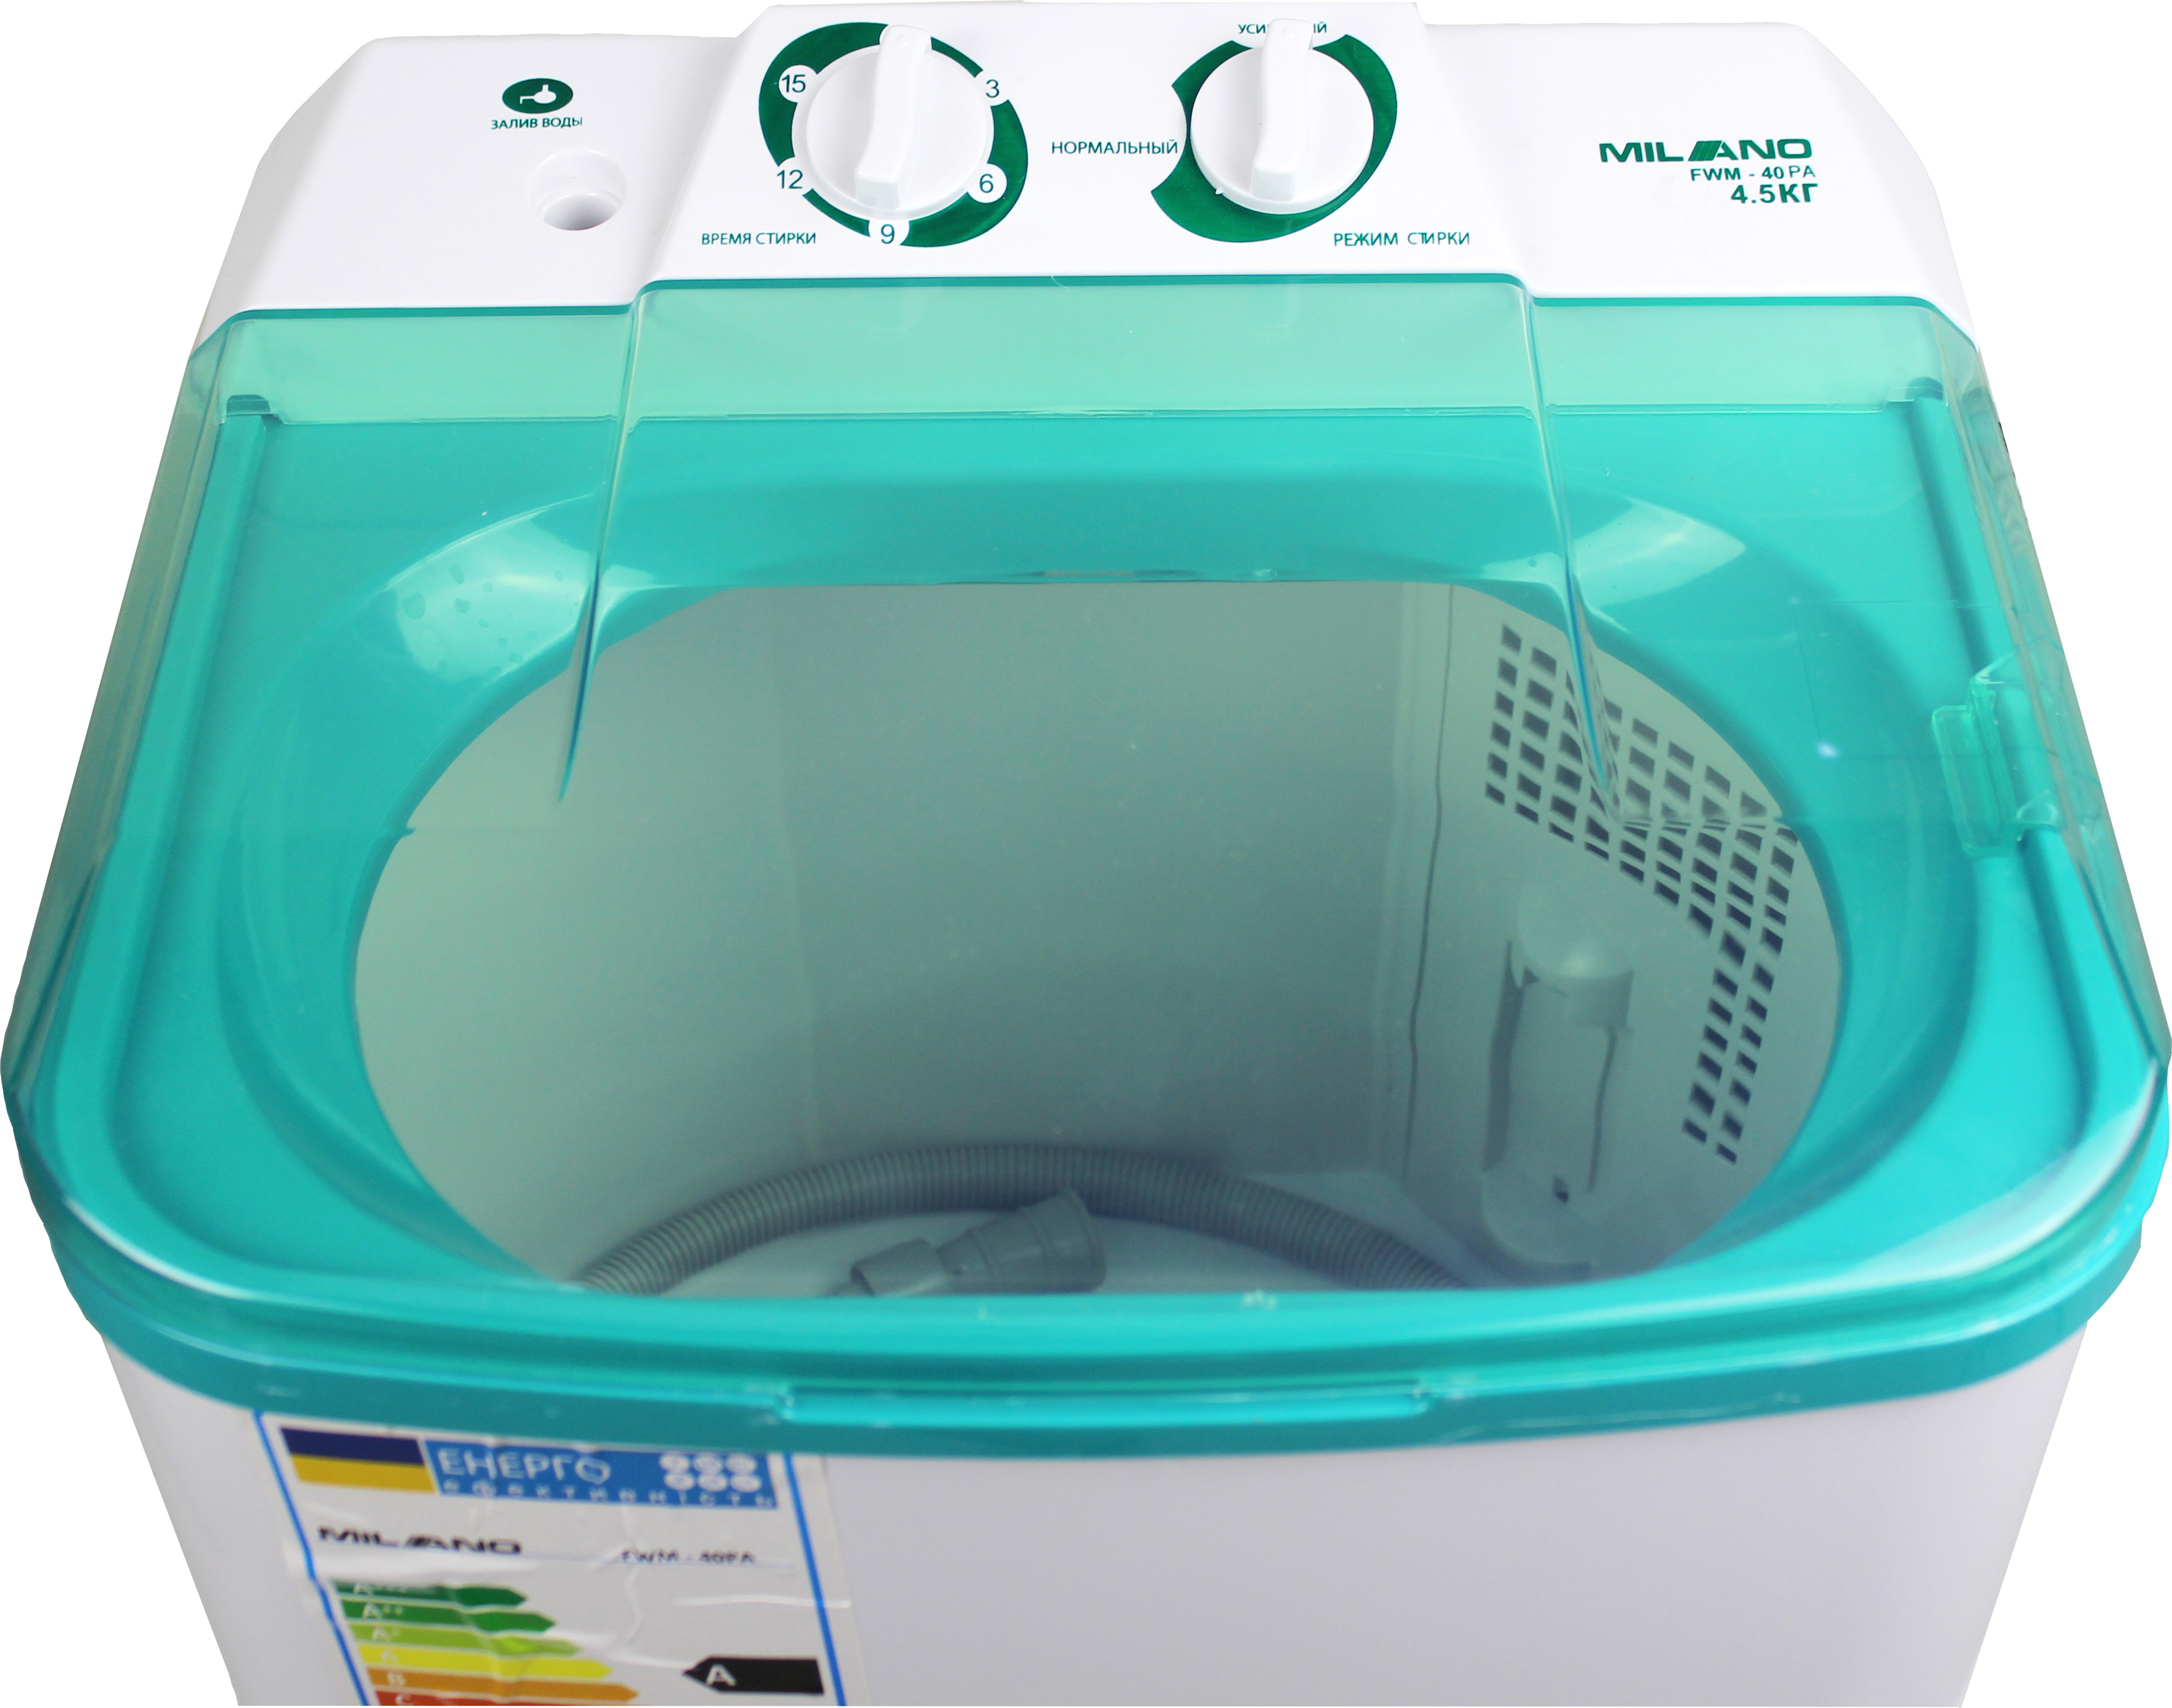 Ремонт стиральных машин малогабаритных неавтоматических типа СМ-1